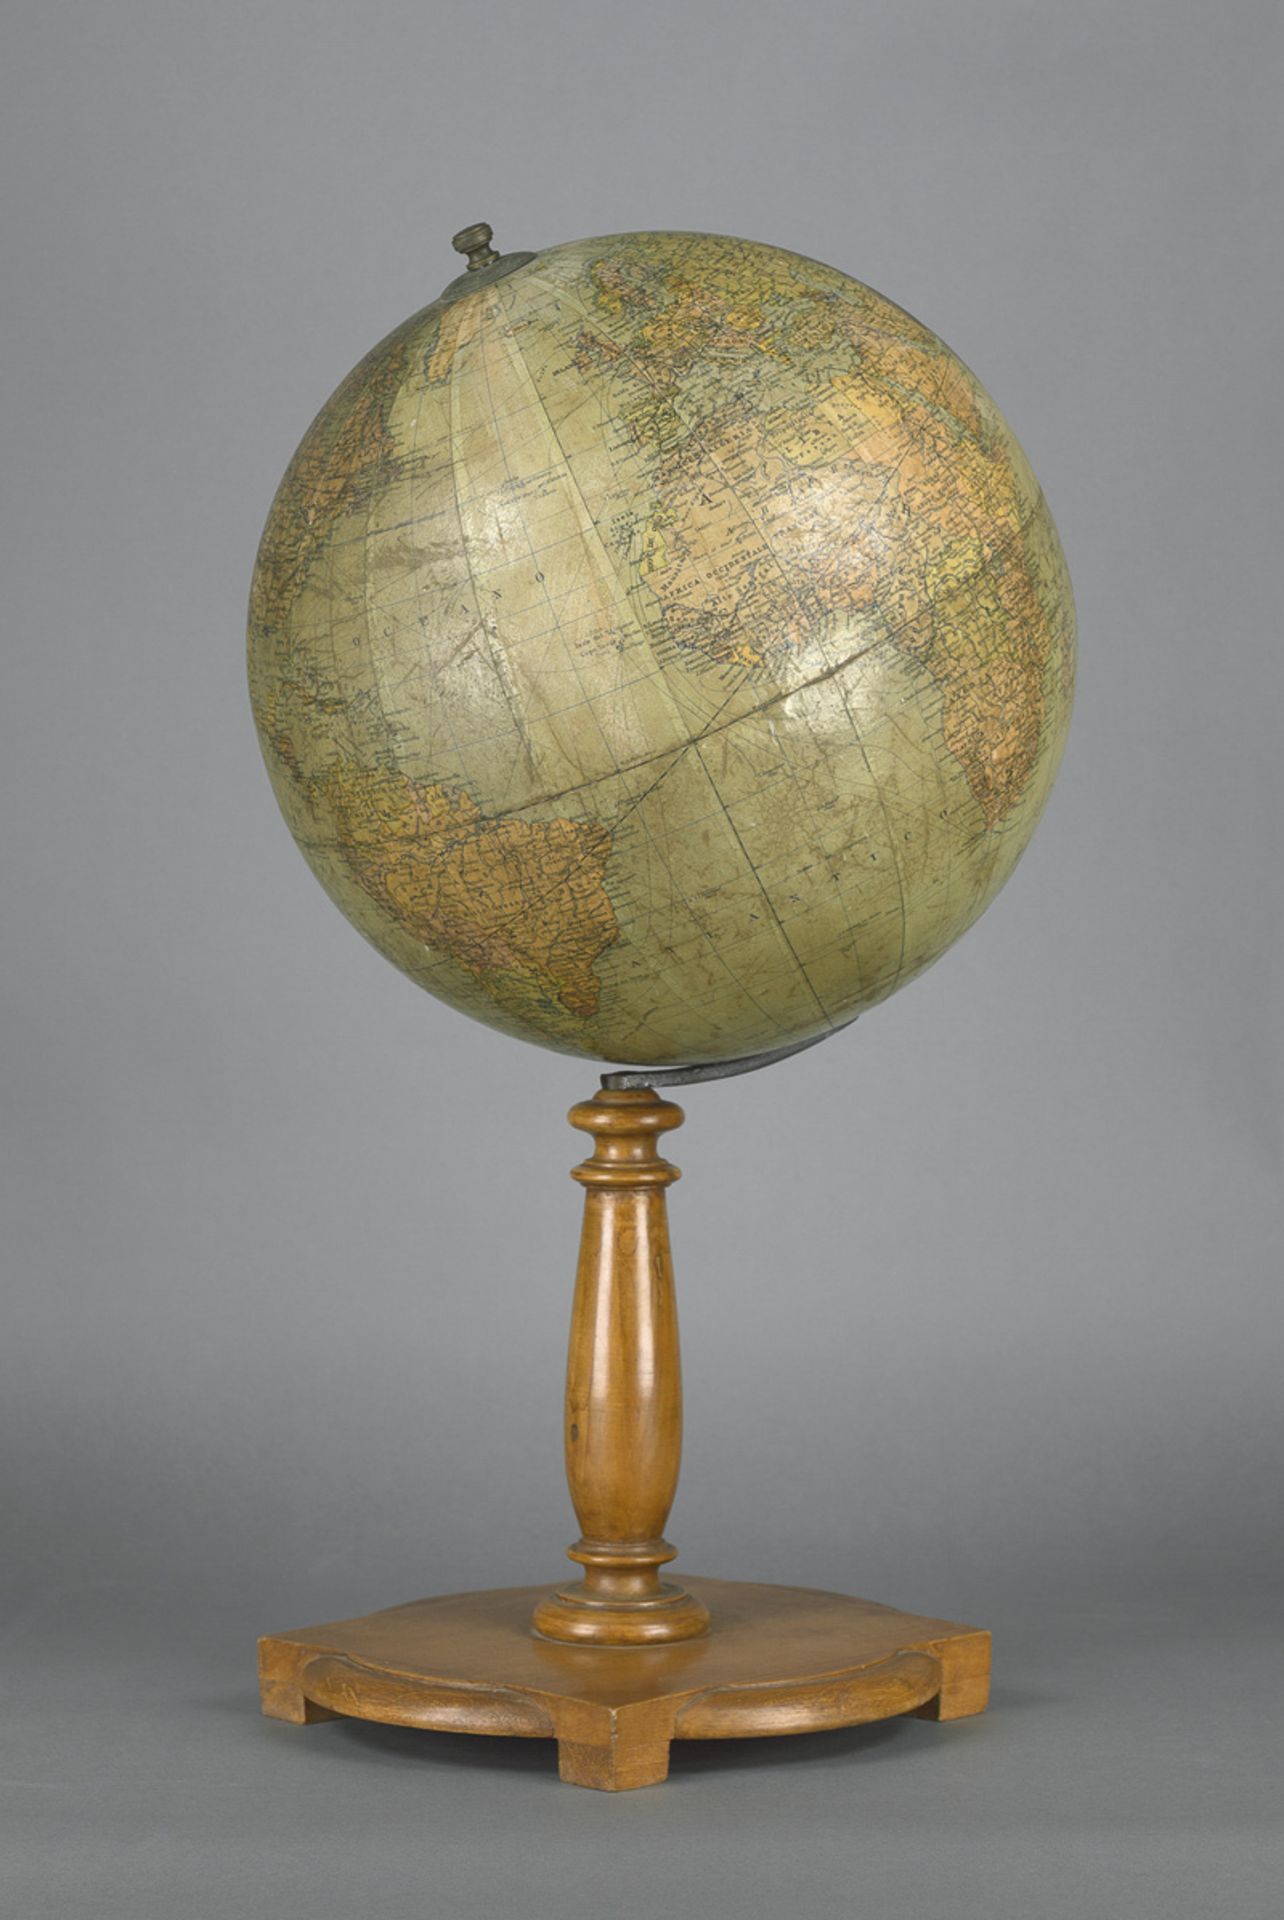 Minelli, A. und Vallardi, Antonio: Globo terrestre del diametro di cent. 35.